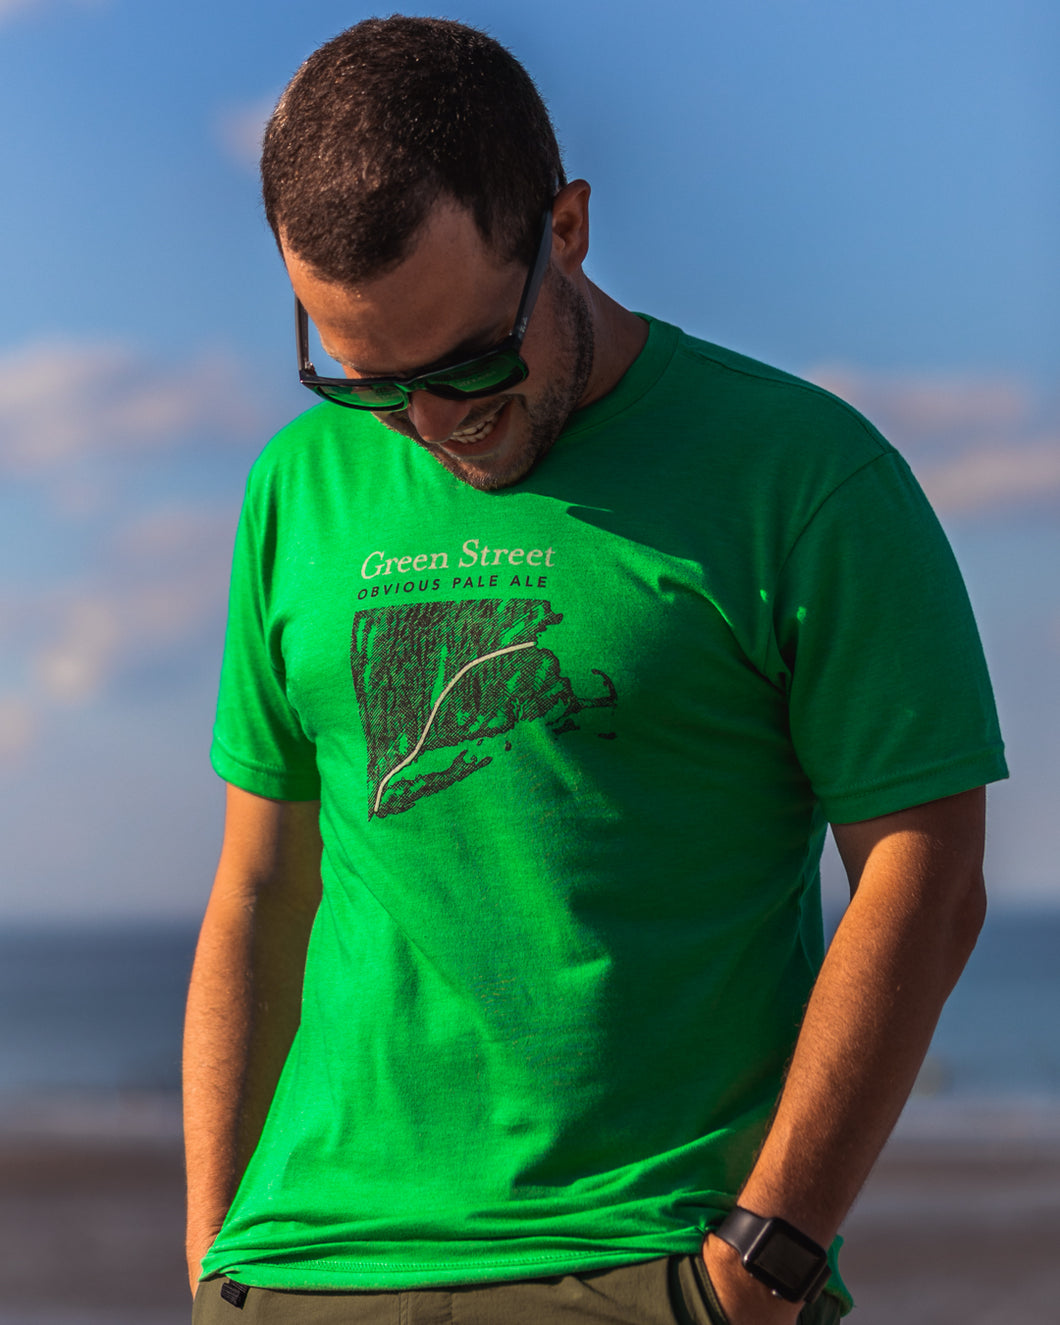 Male wearing green t-shirt